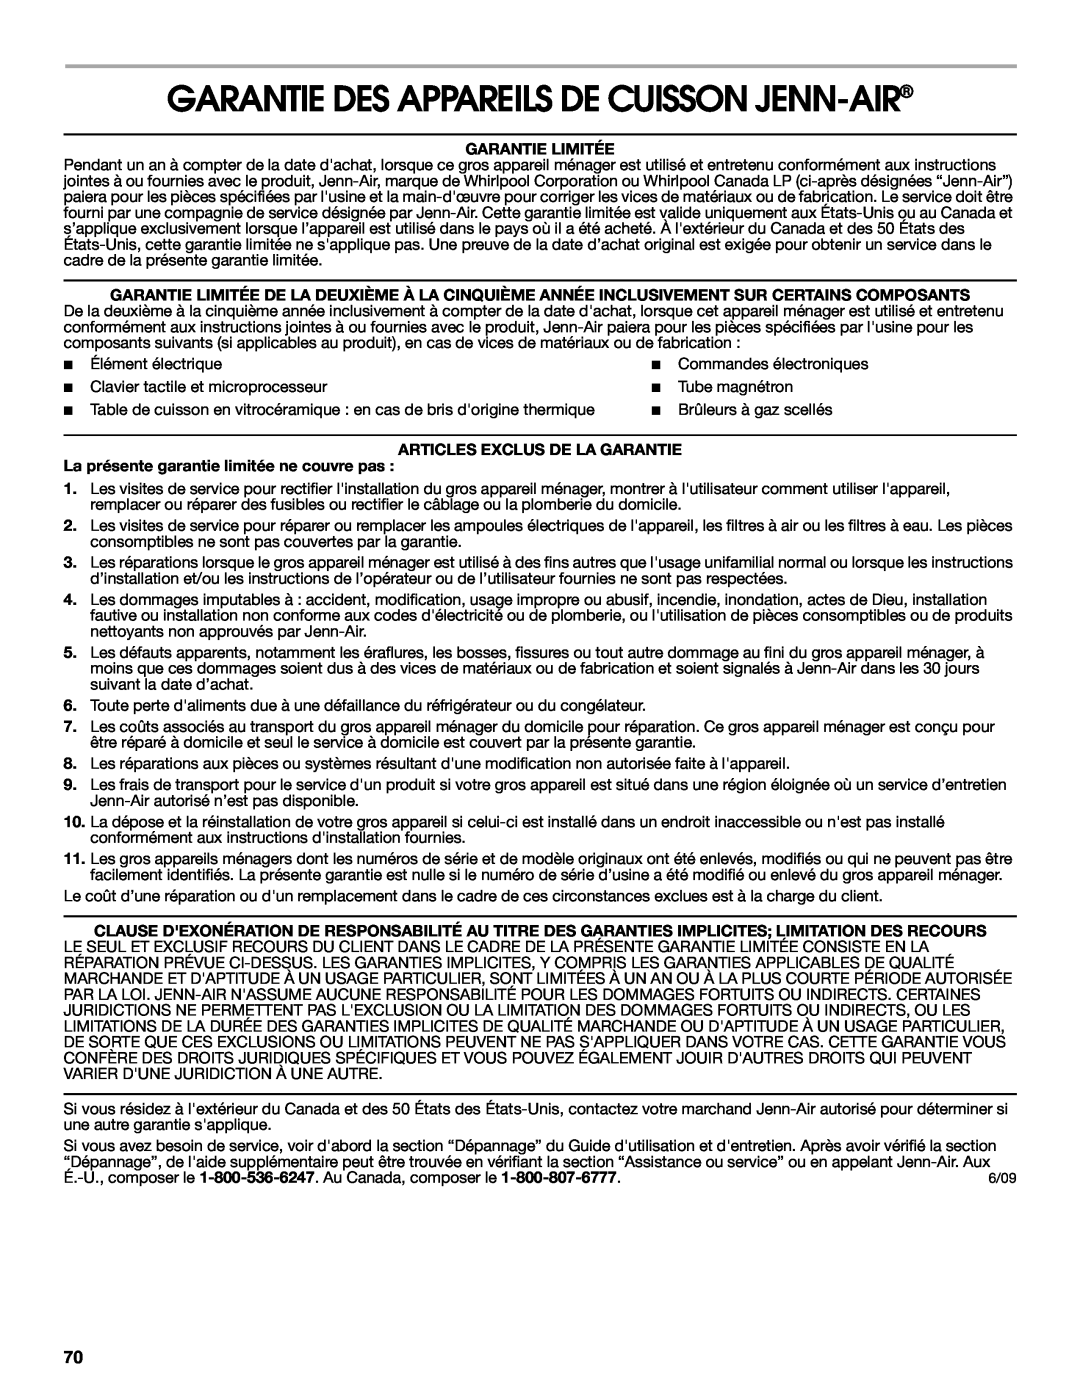 Jenn-Air JJW3830 manual Garantie Des Appareils De Cuisson Jenn-Air, Garantie Limitée, Articles Exclus De La Garantie 